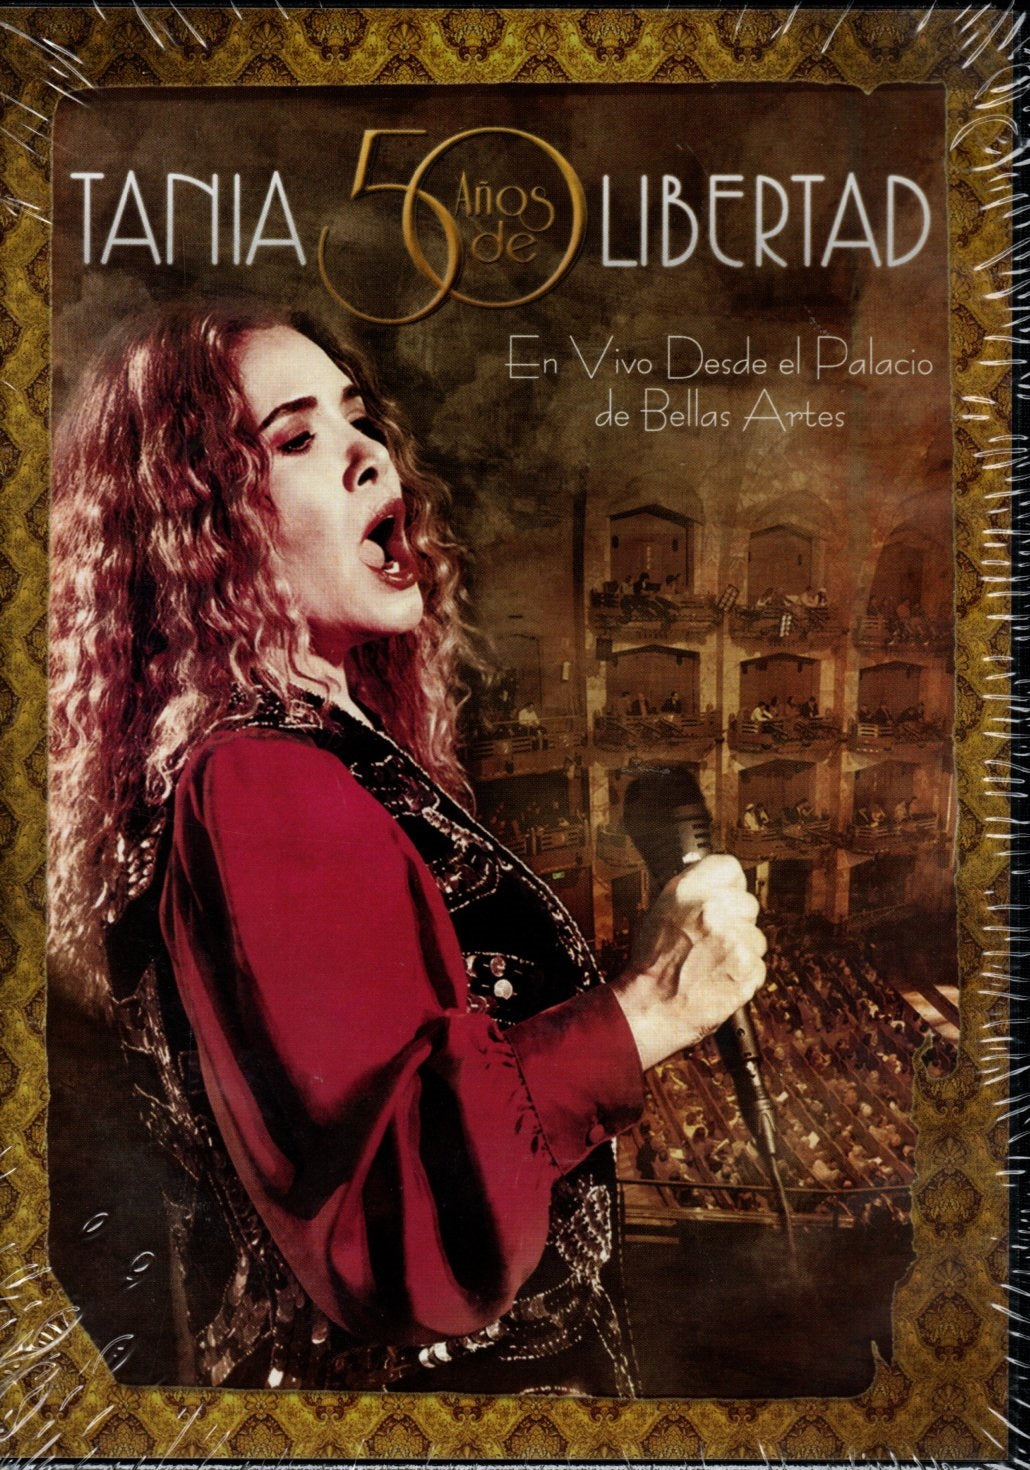 CDX2 +DVD Tania Libertad – Tania 50 Años De Libertad